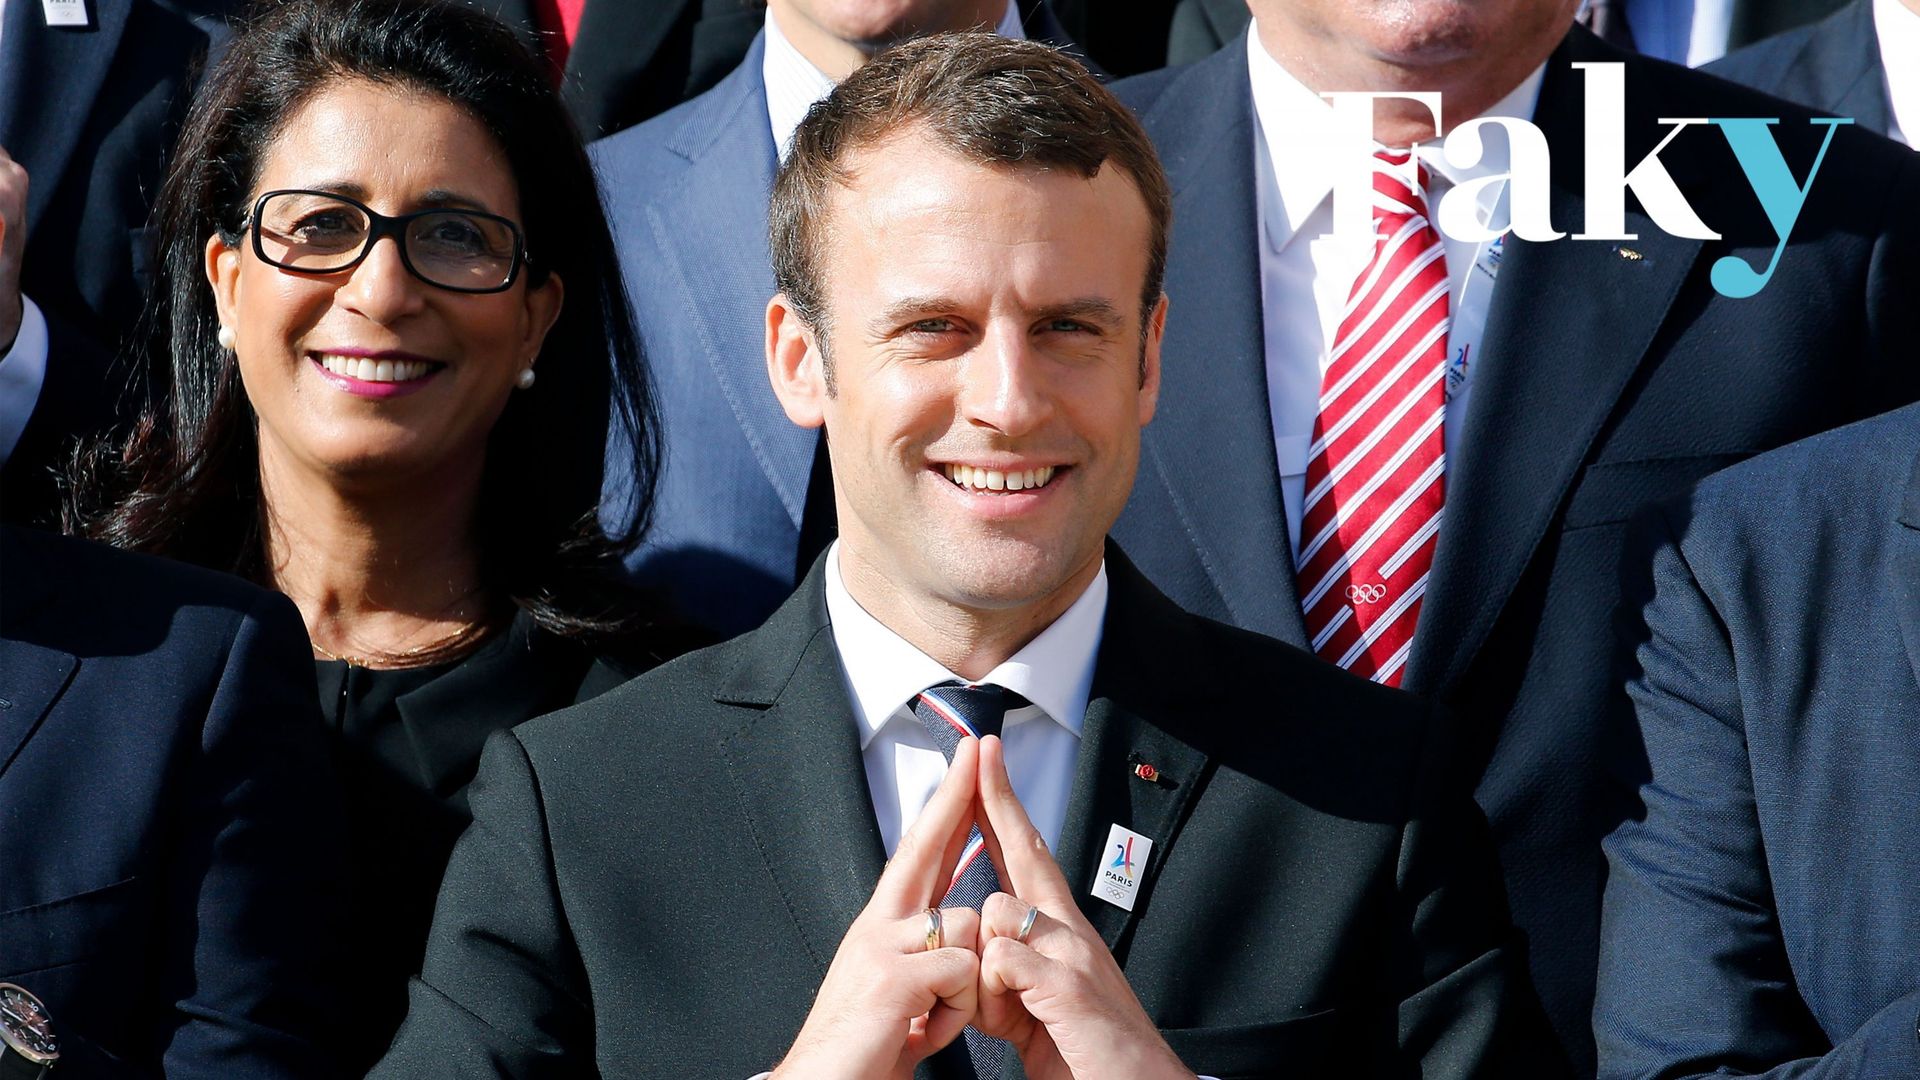 Le nouveau président français Emmanuel Macron fait un signe représentant la Tour Eiffel, le logo de la candidature de Paris 2024, alors qu’il pose lors d’une photo de famille avec les membres de la commission d’évaluation du Comité international olympique